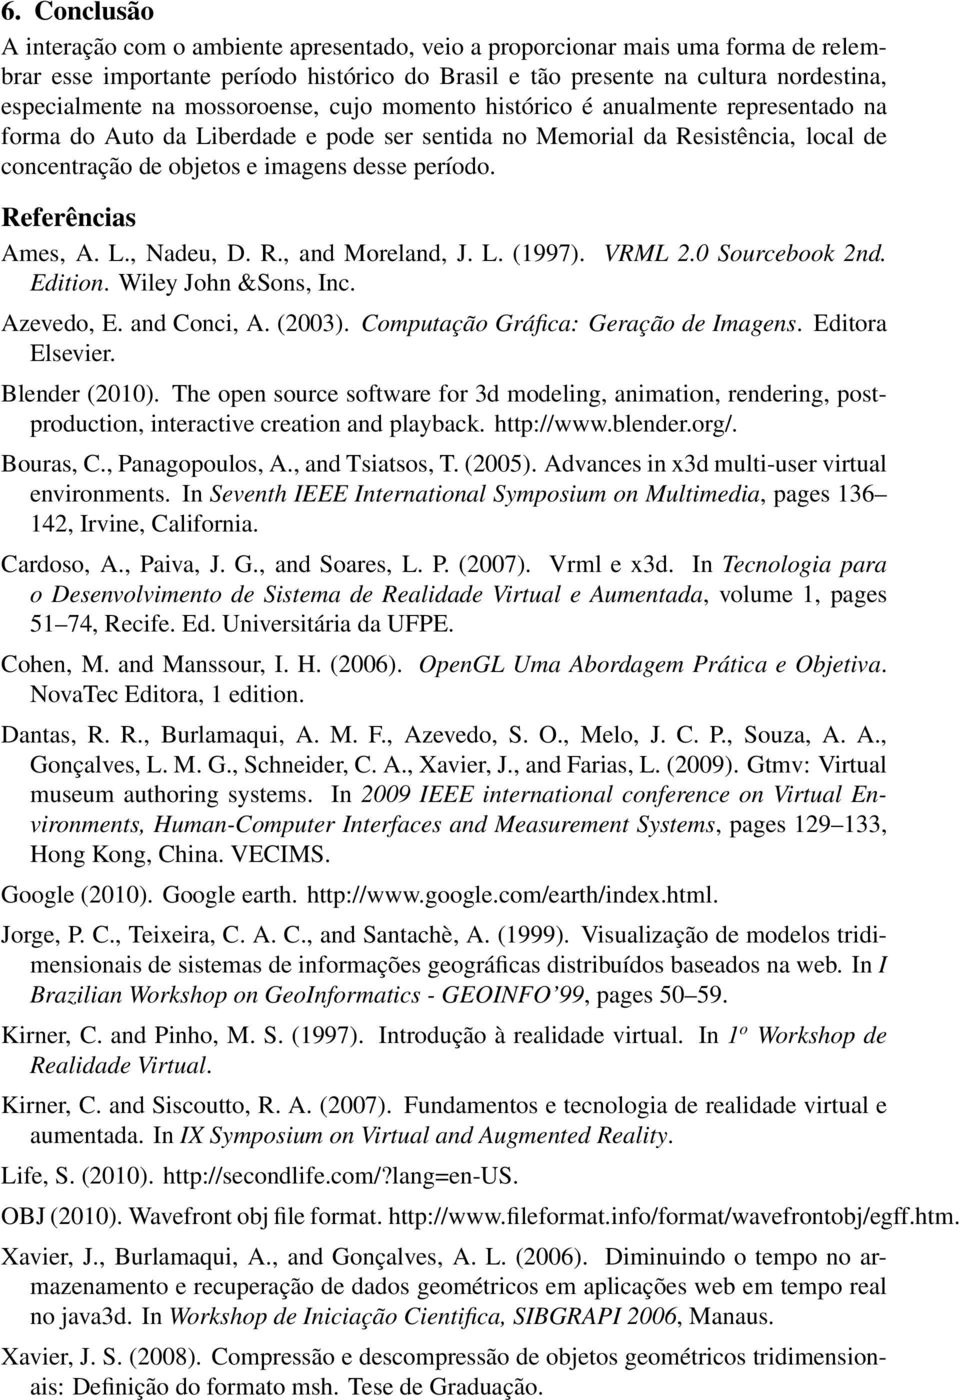 Referências Ames, A. L., Nadeu, D. R., and Moreland, J. L. (1997). VRML 2.0 Sourcebook 2nd. Edition. Wiley John &Sons, Inc. Azevedo, E. and Conci, A. (2003). Computação Gráfica: Geração de Imagens.